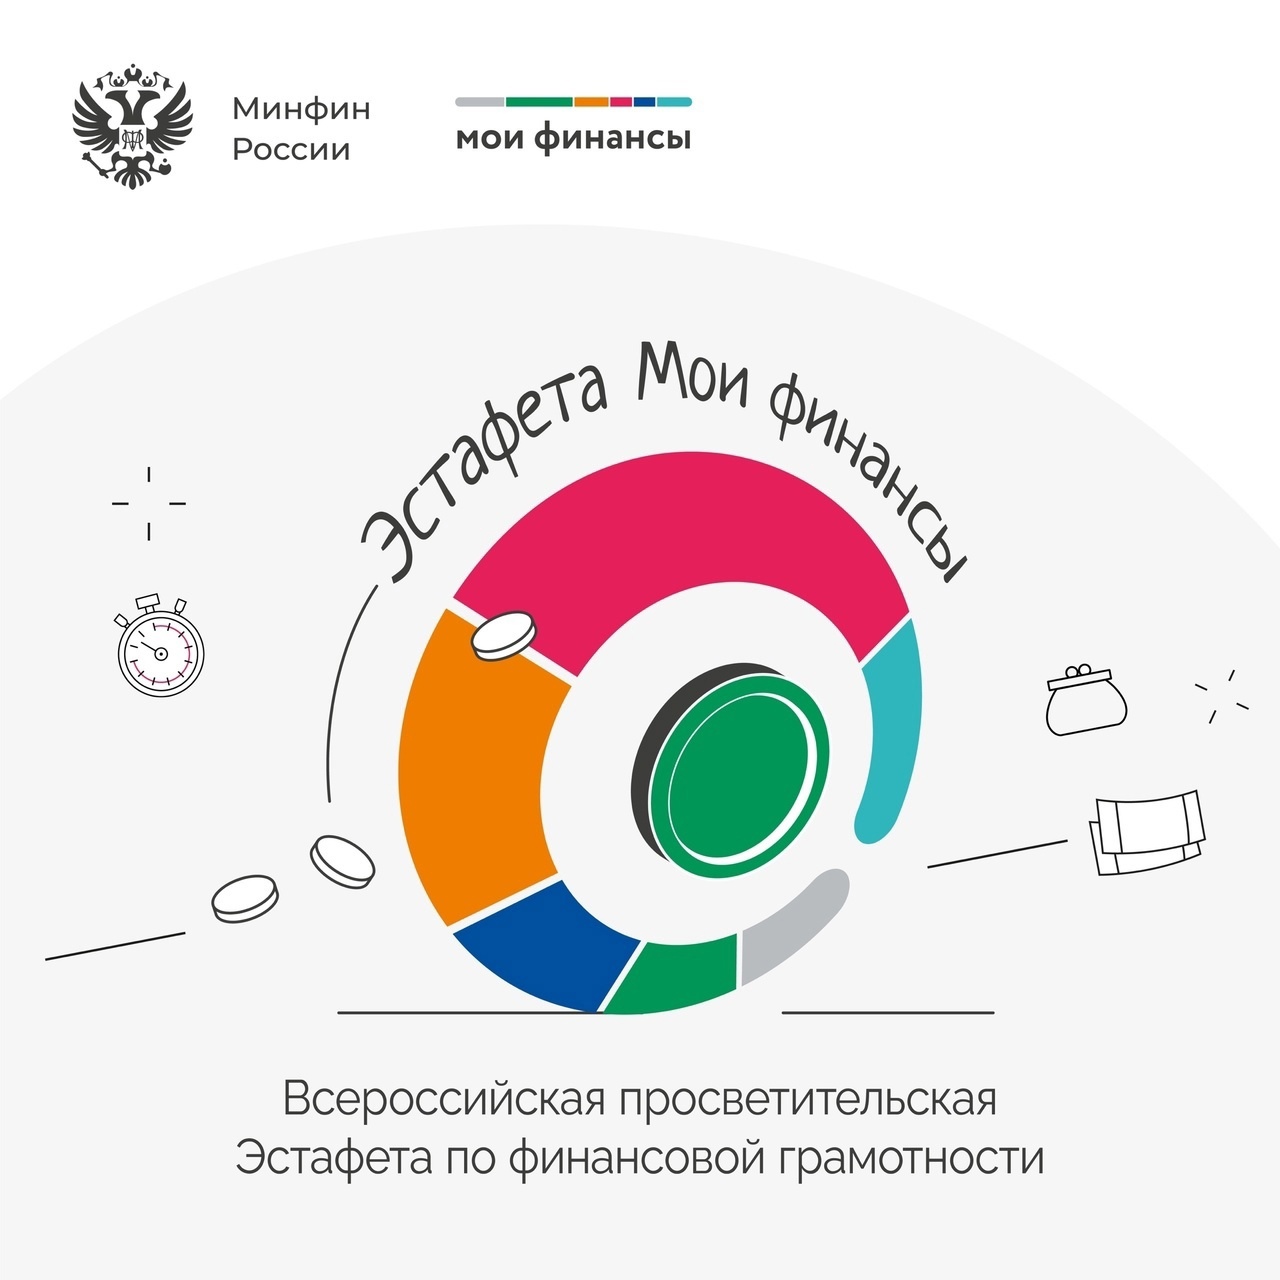 Приглашаем принять участие во всероссийской просветительской эстафете "Мои финансы".